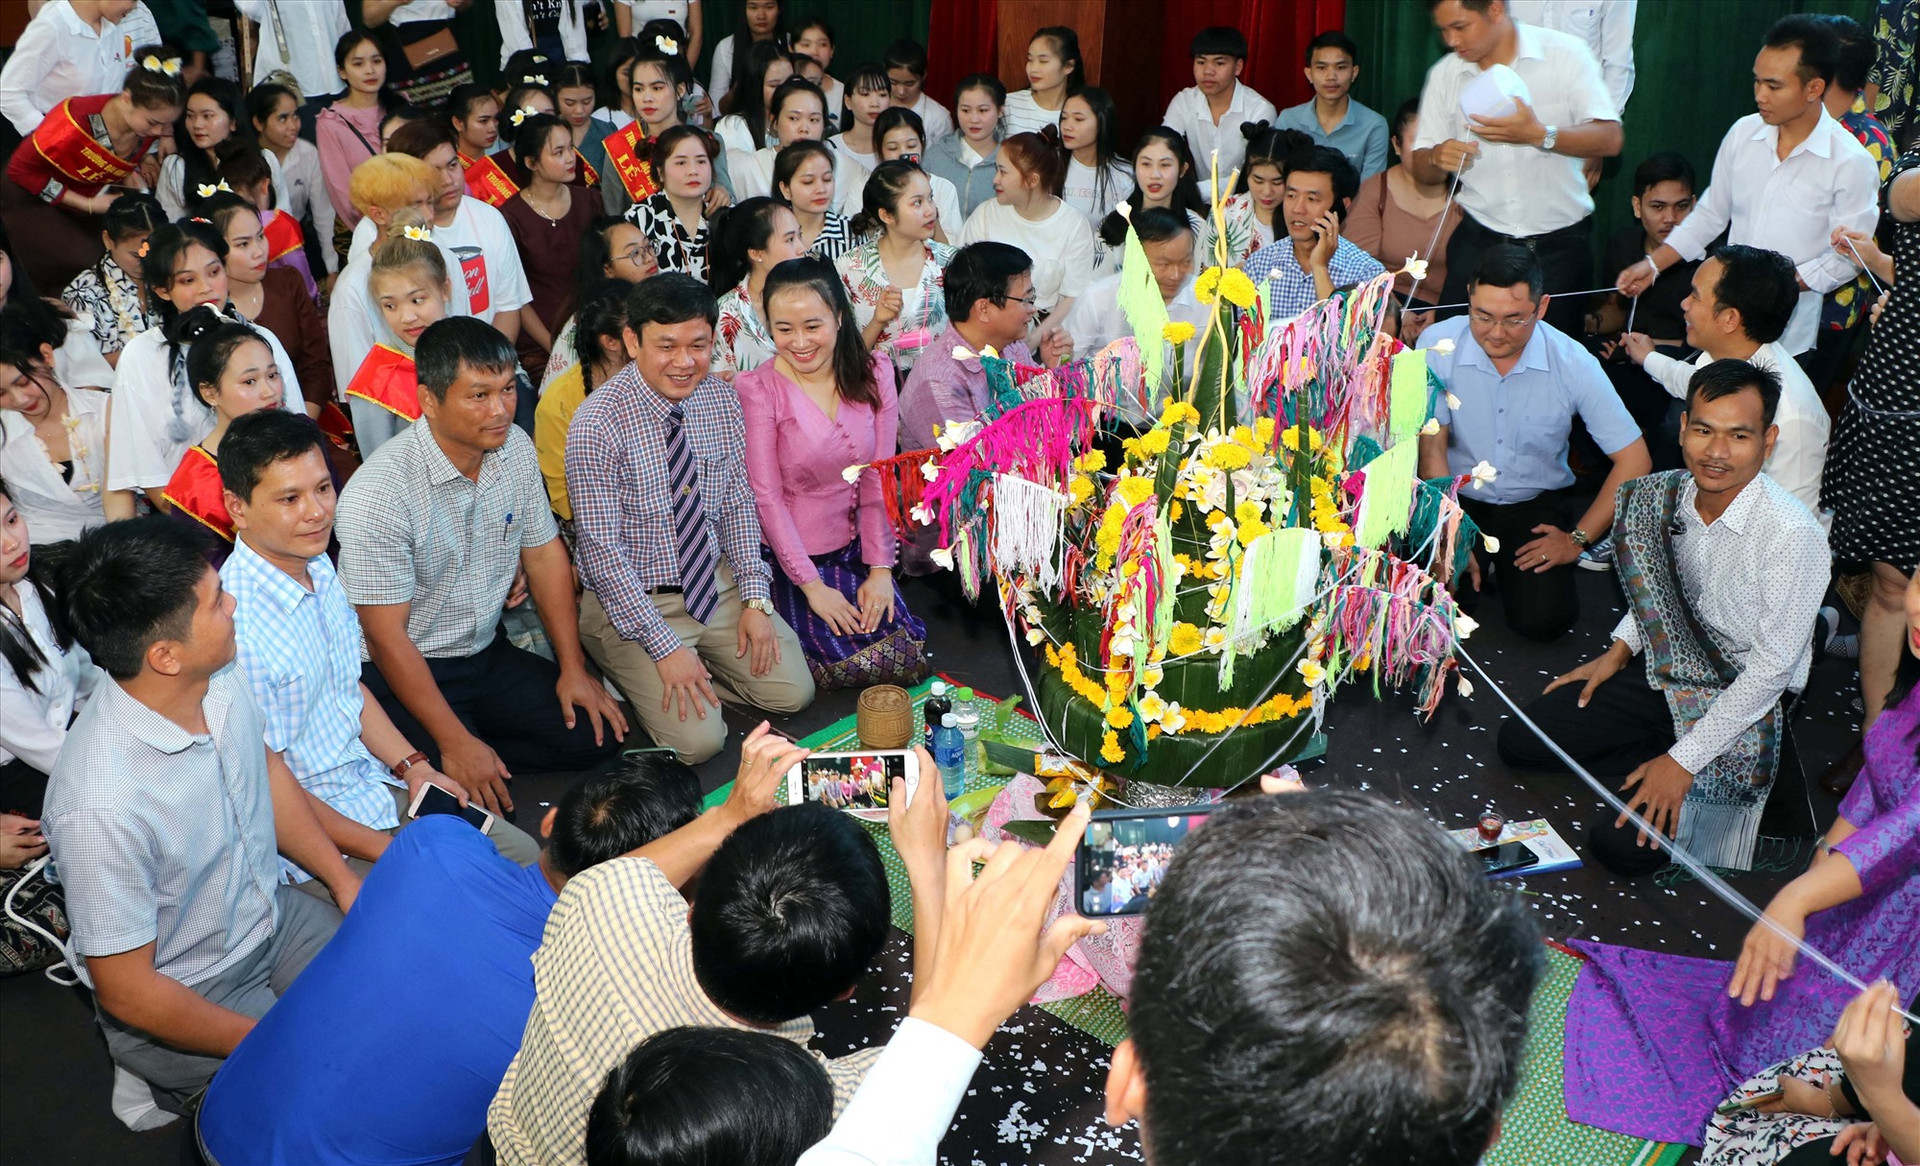 Các đại biểu tham gia nghi lễ mừng năm mới cùng với lưu học sinh Lào. Ảnh: CHÂU HÙNG.